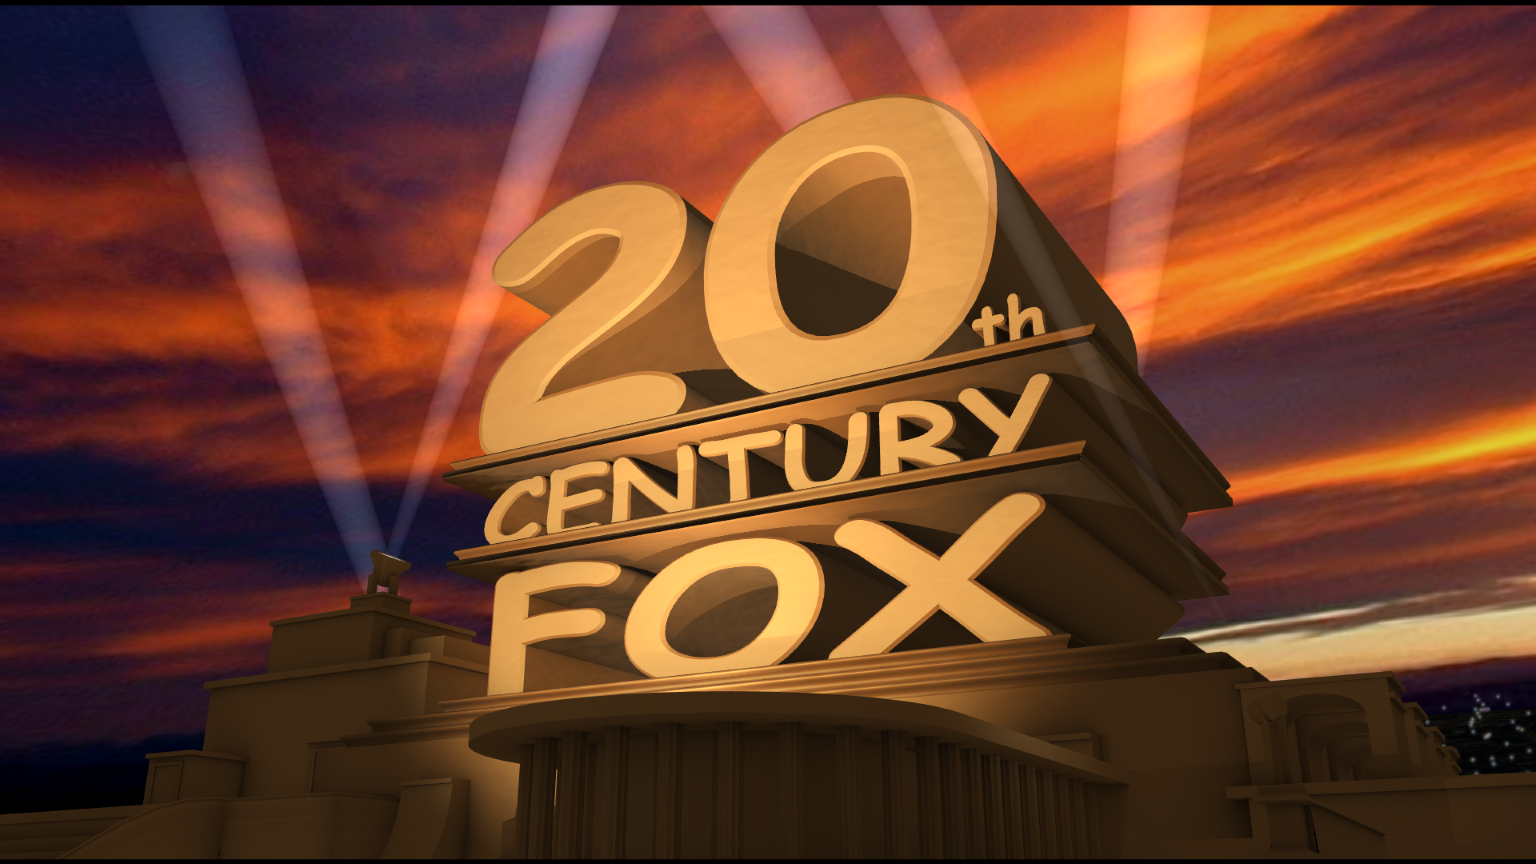 Киностудия двадцатый век Фокс. Интро в стиле 20th Century Fox. 20 Лет выпуска. Встреча выпускников 20 лет. 25 вечером 20